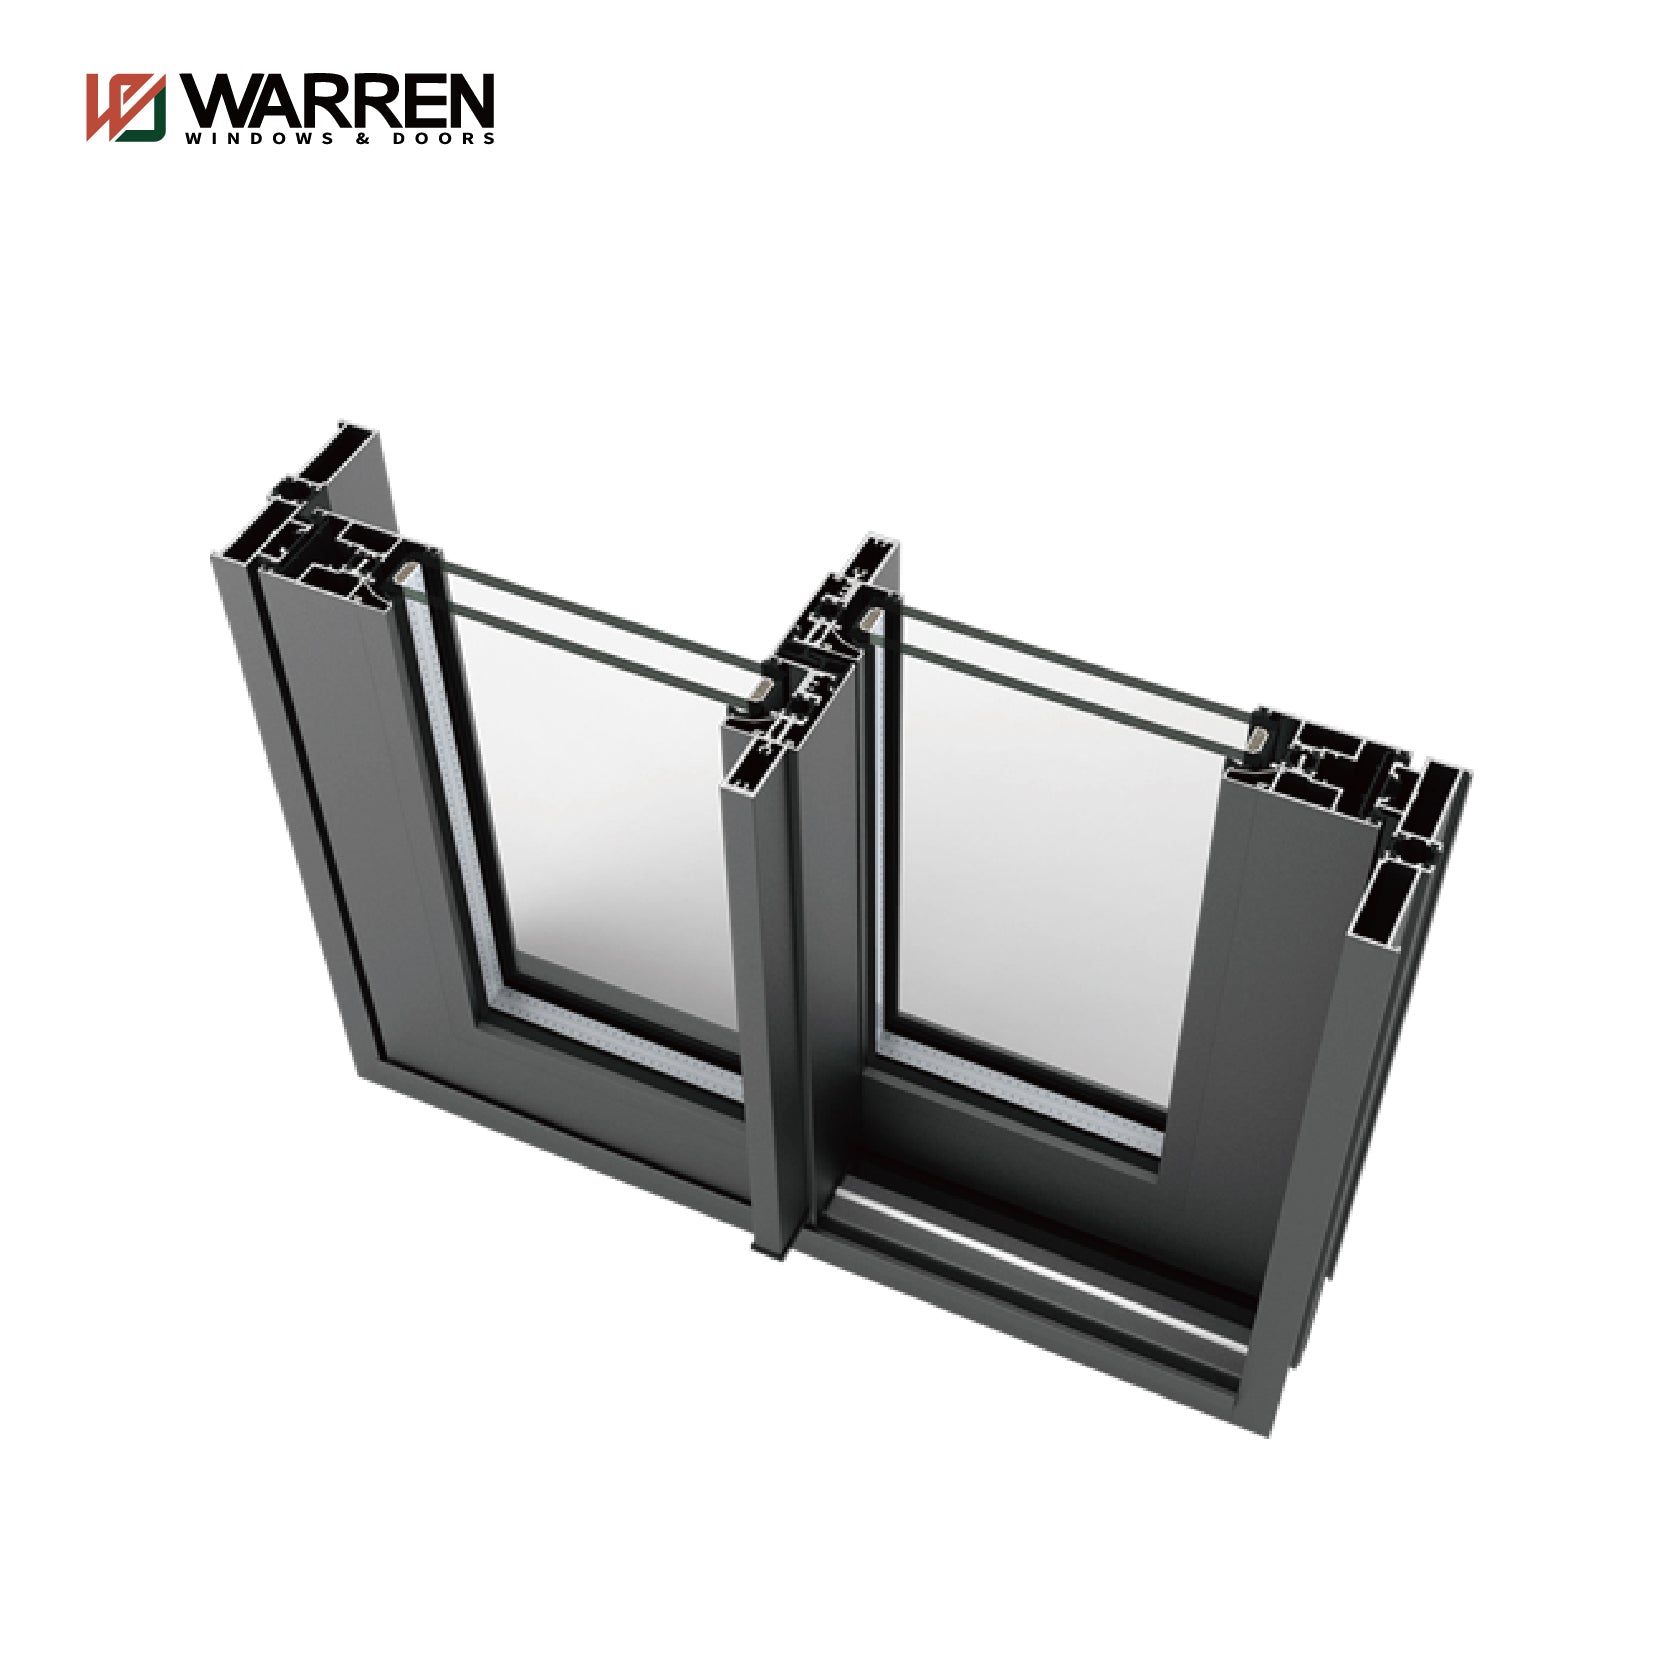 Warren Outdoors And Indoors Double Glazed Sliding Door Glass Sliding Doors Aluminium Door